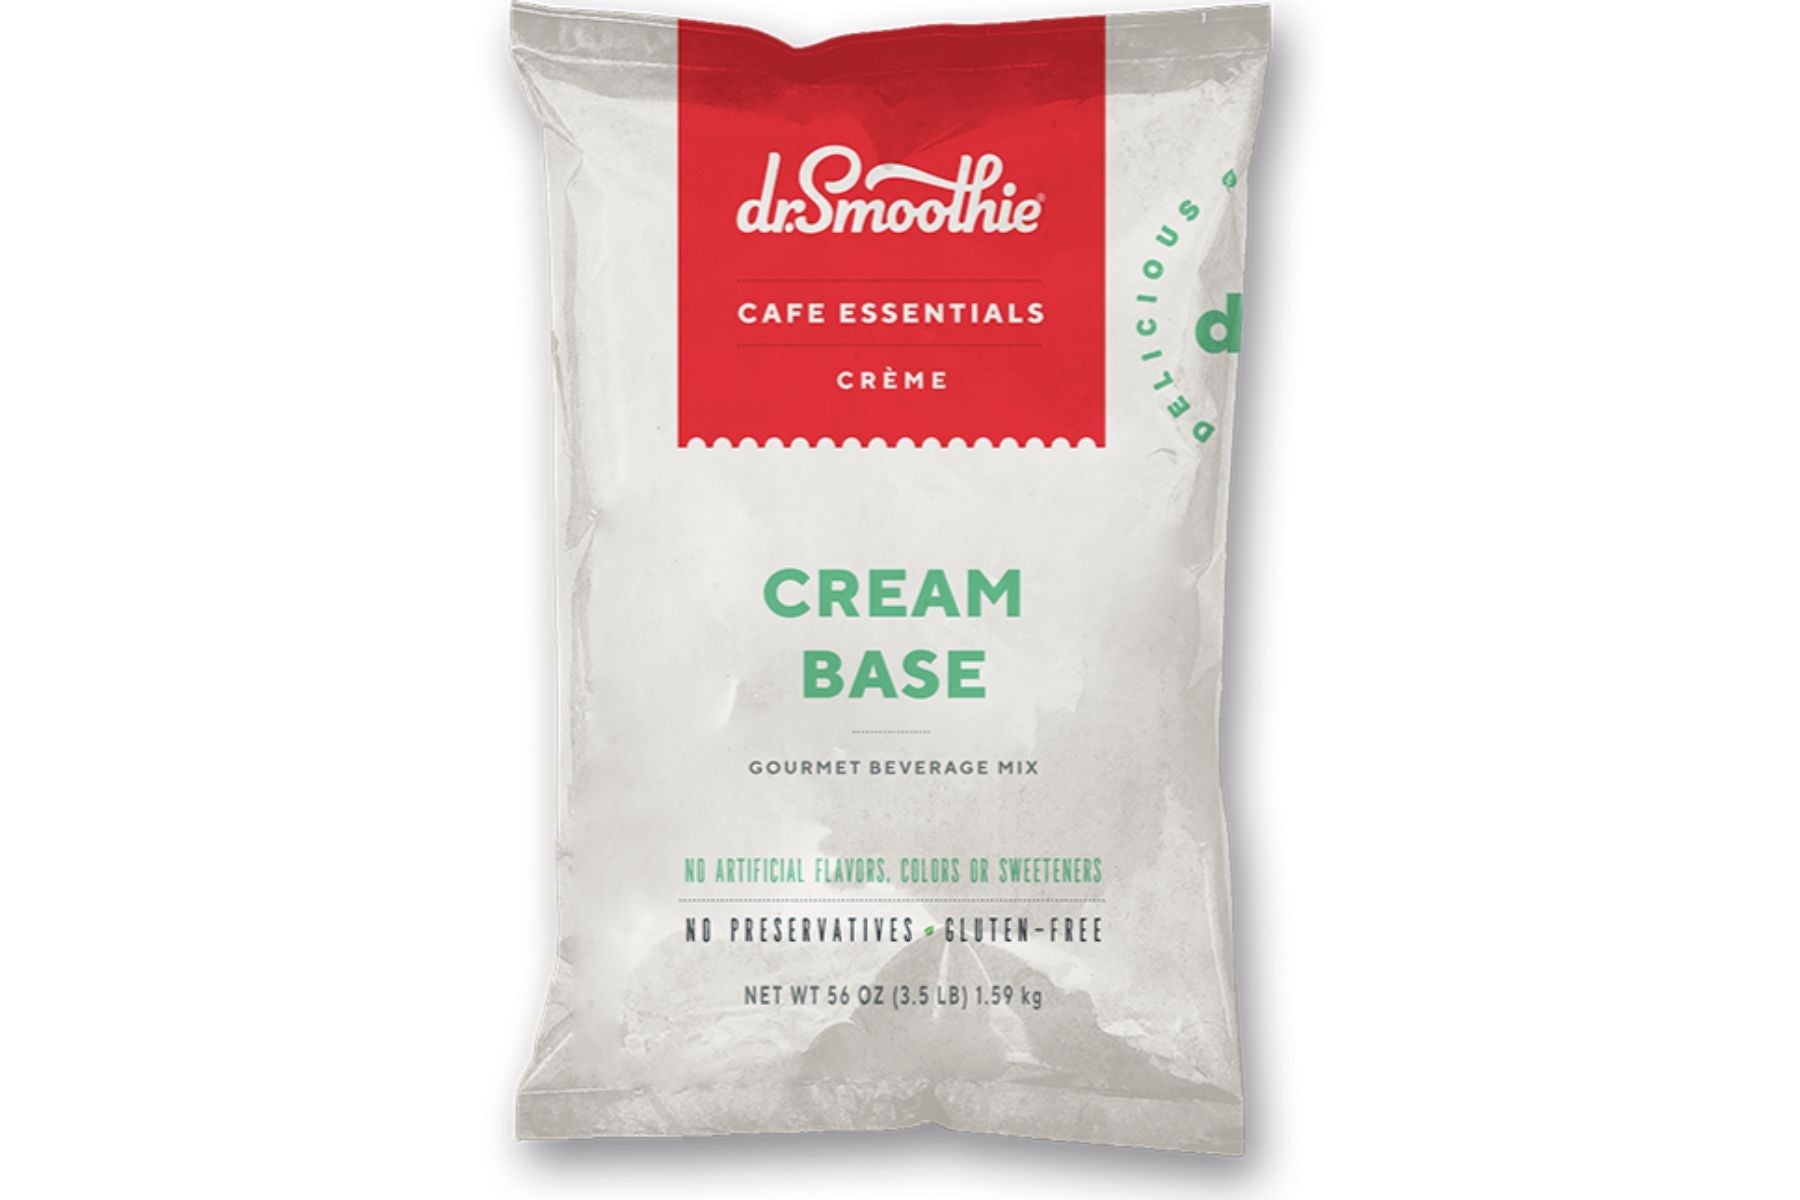 Dr. Smoothie Cafe Essentials Creme - 3.5lb Bulk Bag: Cream Base